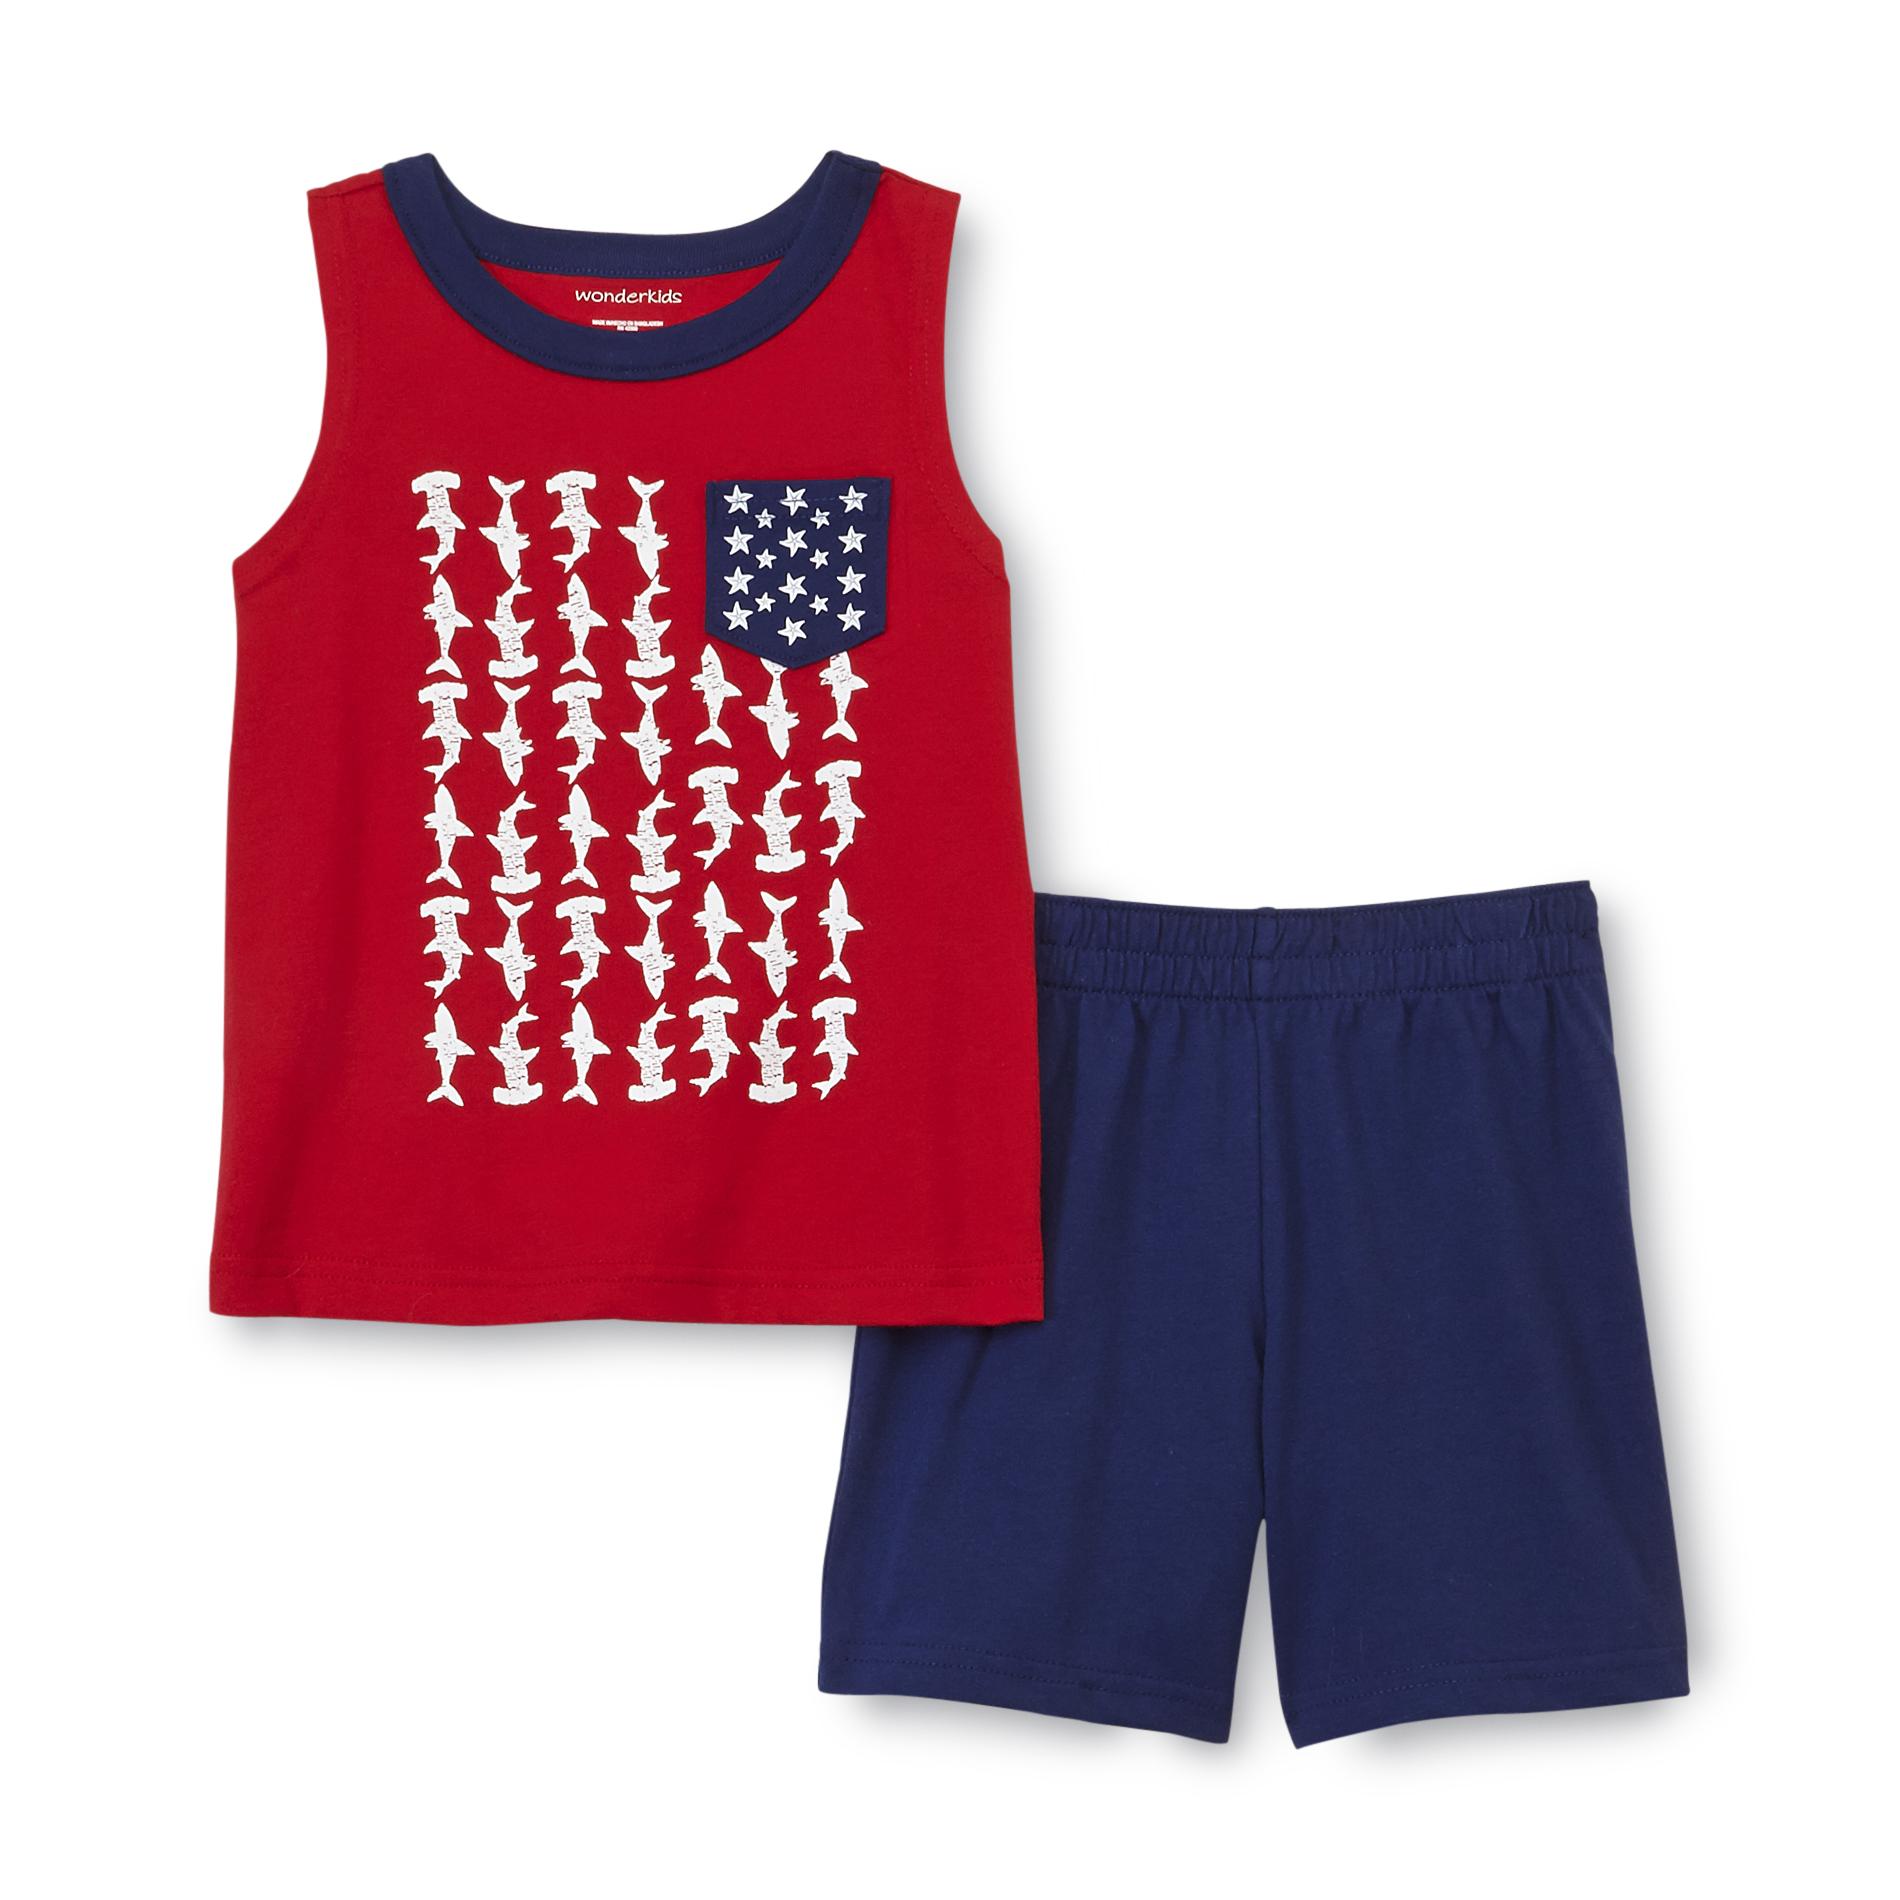 WonderKids Infant & Toddler Boy's Pocket Tank Top & Shorts - Sharks Flag